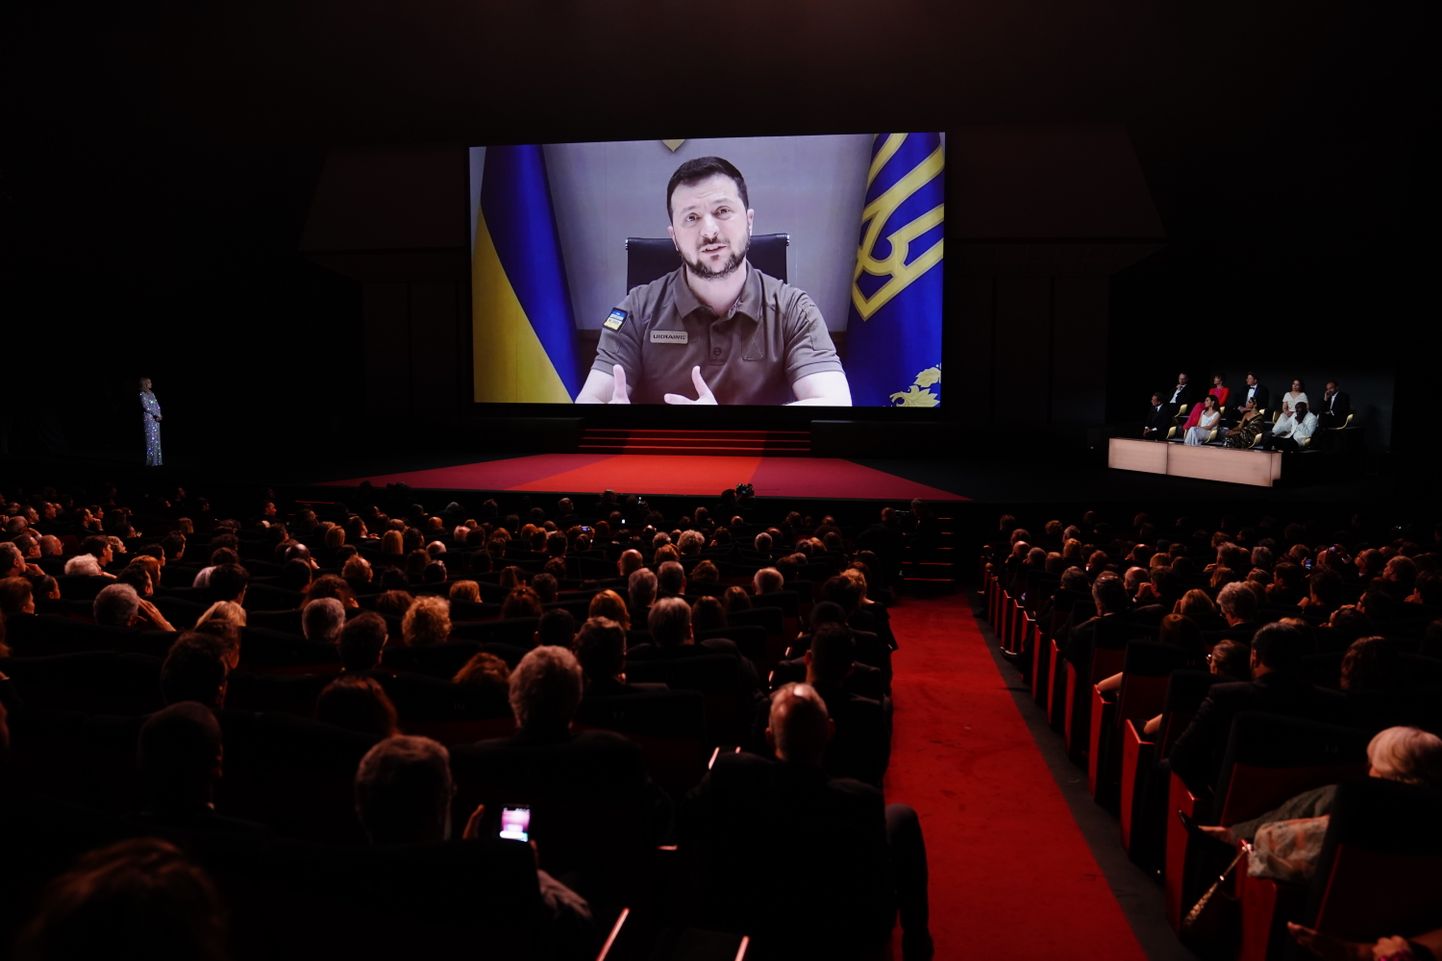 Kannu kinofestivāla atklāšanas ceremonijā otrdien, 17. maijā, tika pārraidīta Ukrainas prezidenta Volodimira Zelenska uzruna,